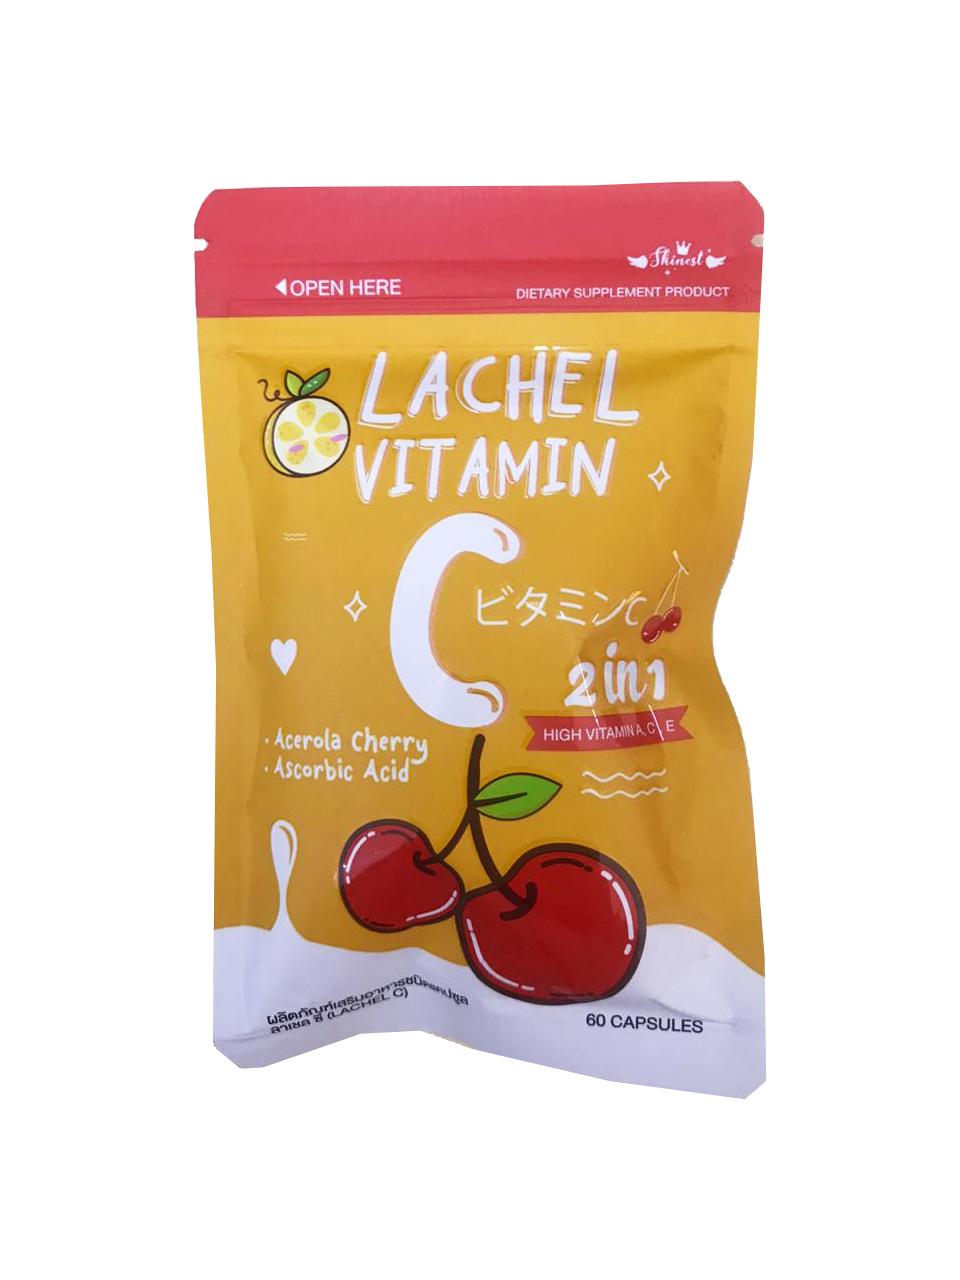 Lachel Vitamin C 2 in 1 60 Capsules